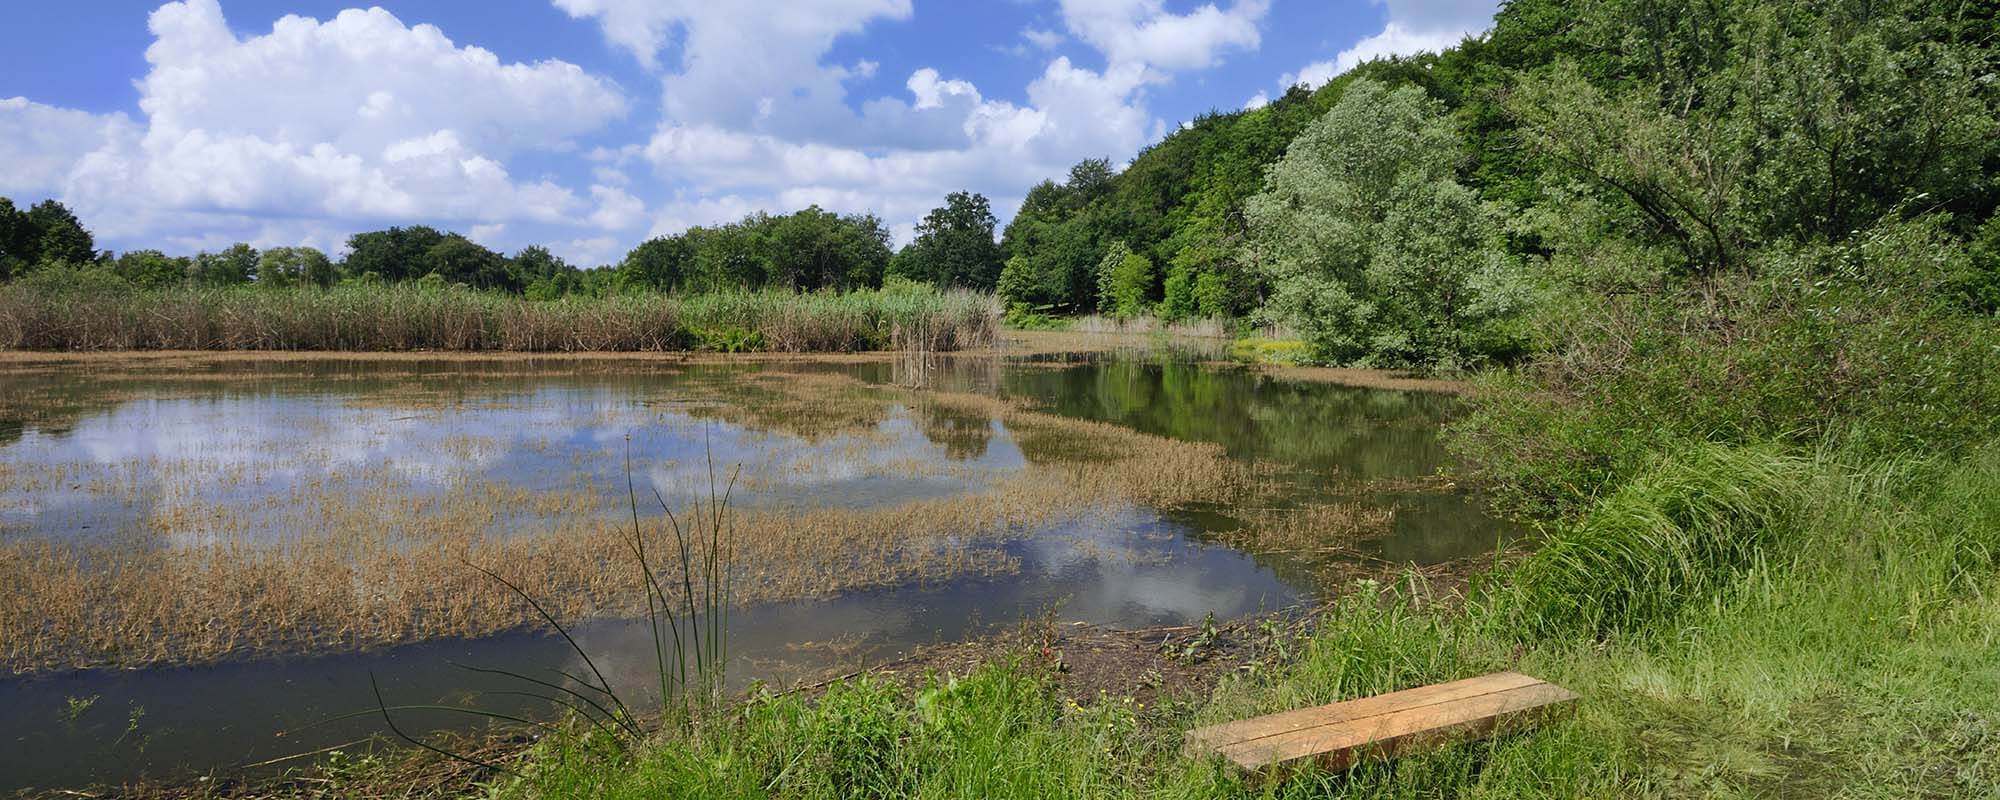 湿地提供生态和经济效益